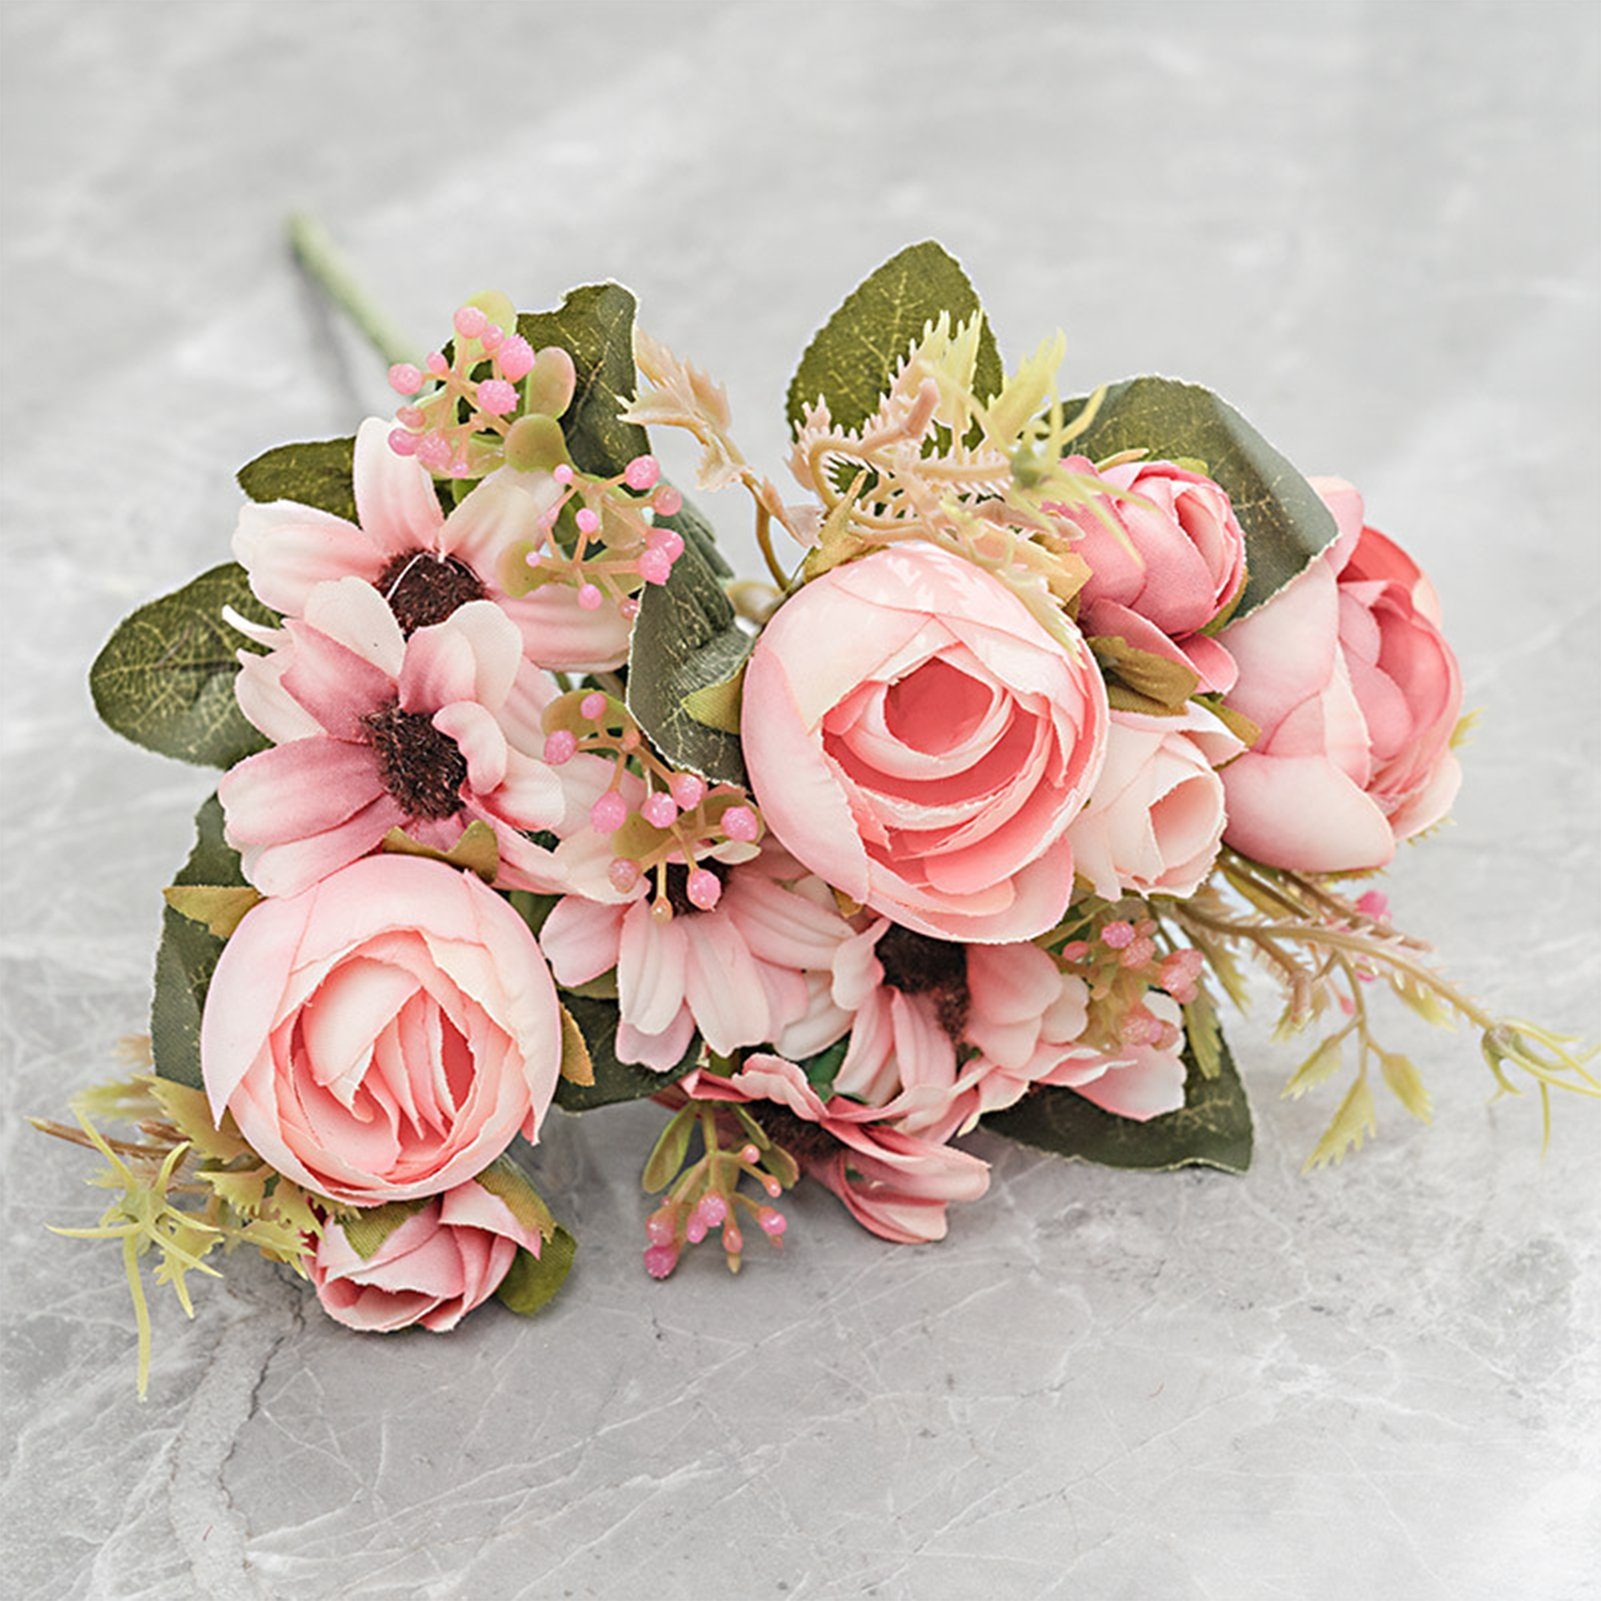 Kunstblumenstrauß Künstlicher Blumenstrauß, Seidenblumen Mit Stielen, Modischer, Blusmart, Kunstblumenstrauß Rosa